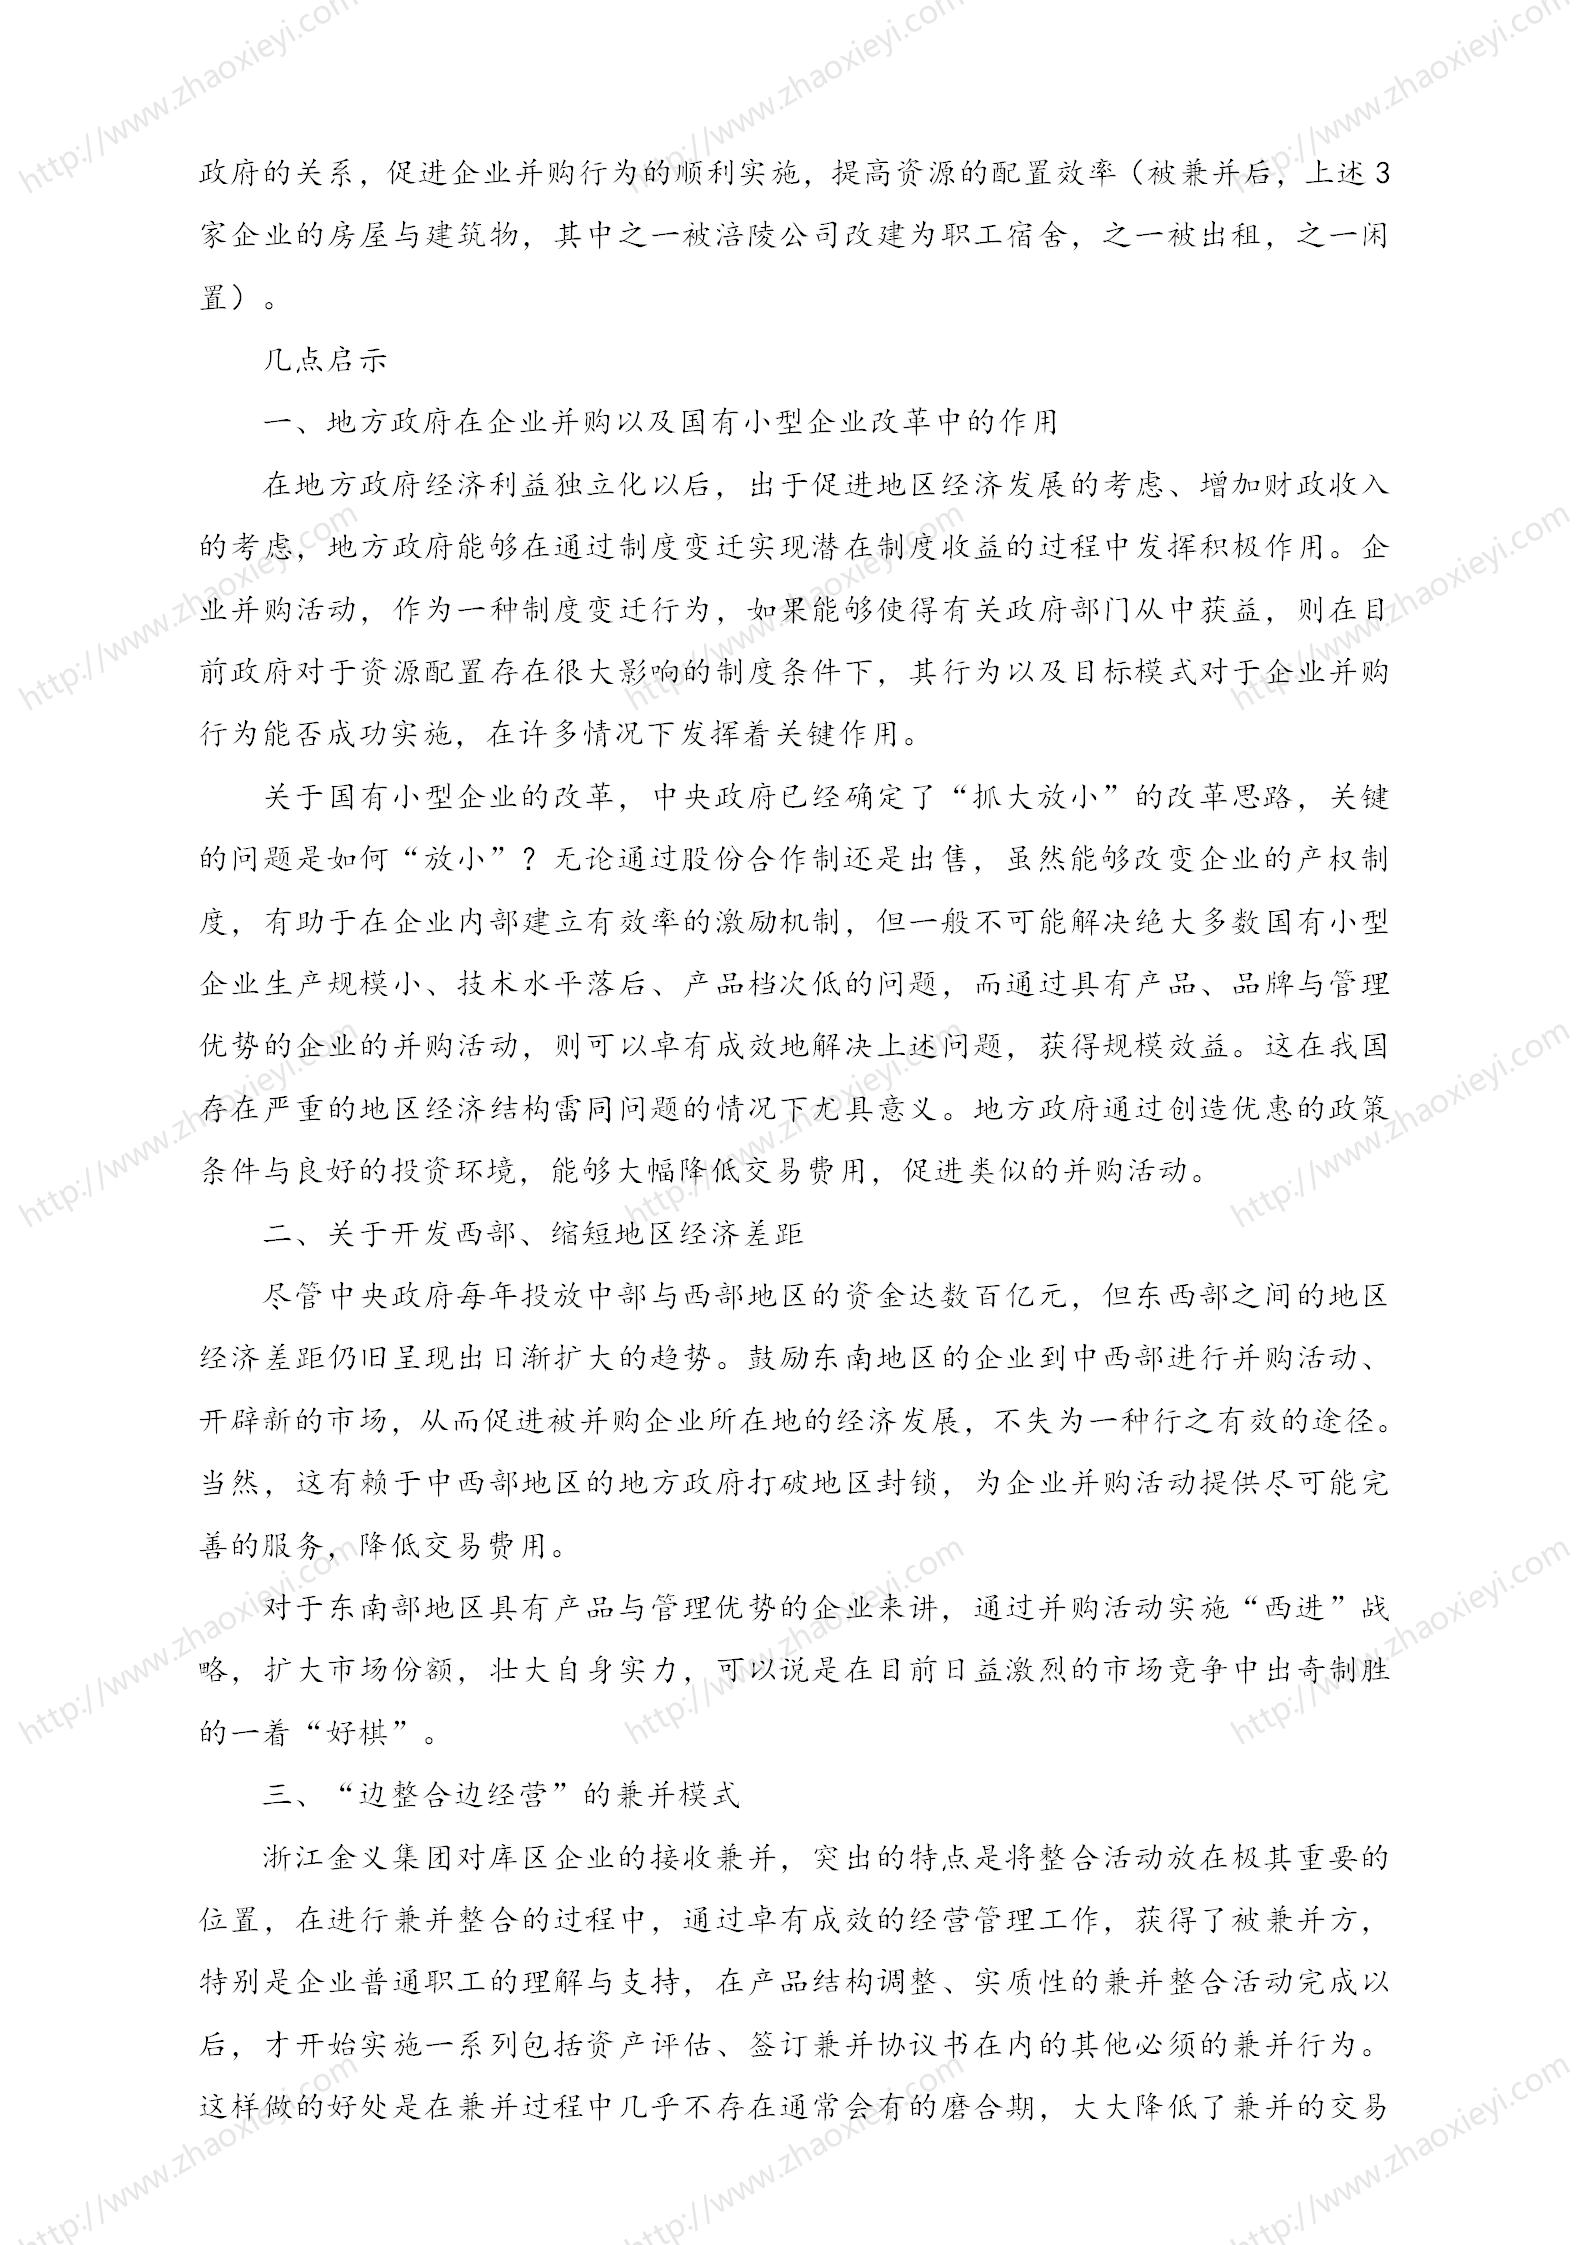 中国企业并购经典案例_132.jpg